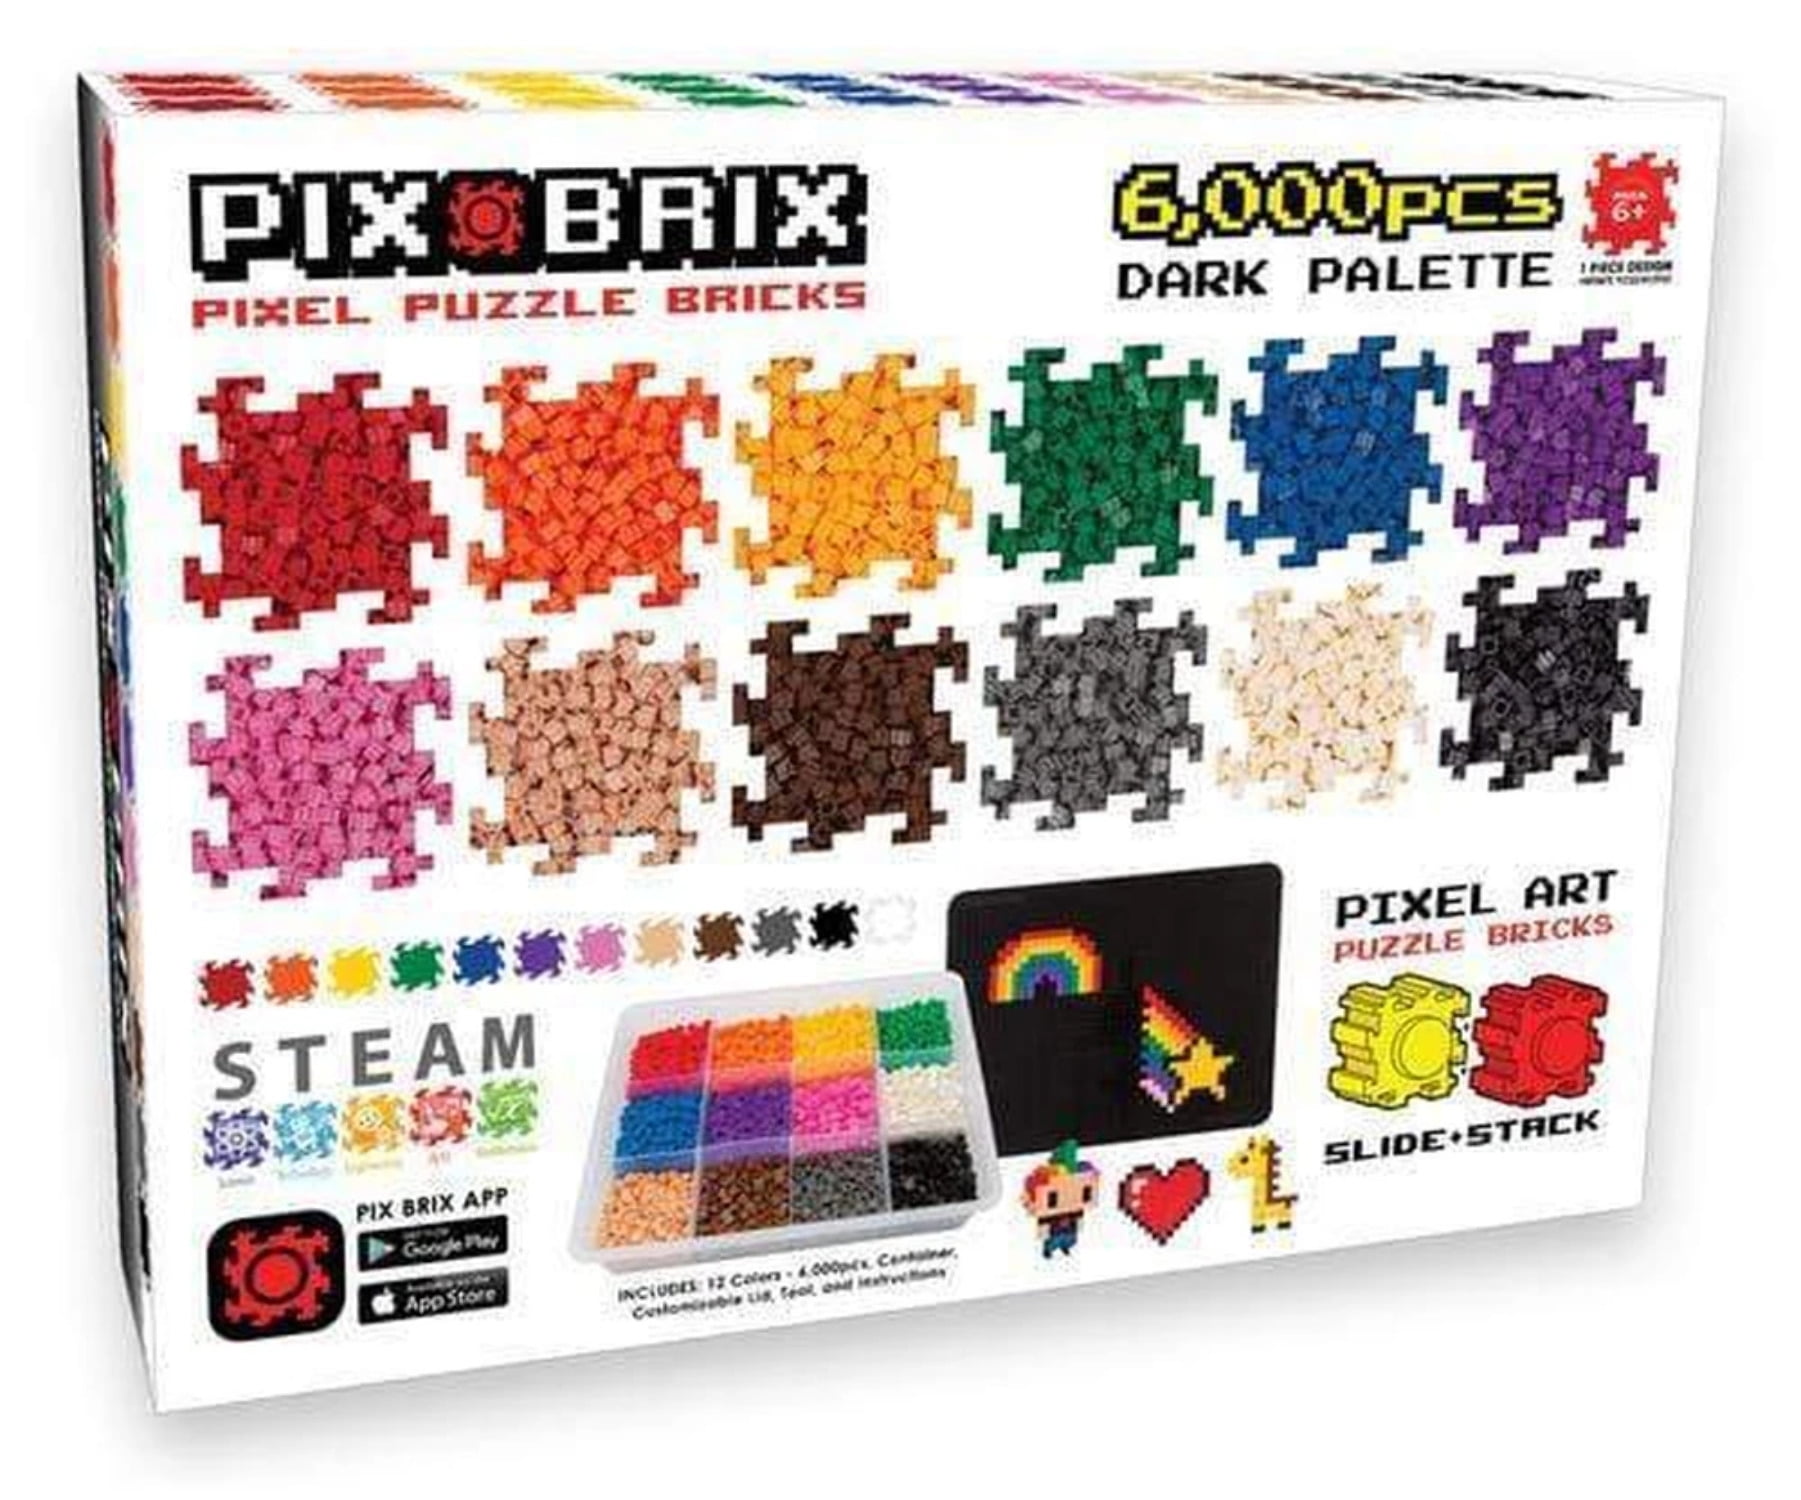 Pix Brix Pixel Art Puzzle Bricks Paint Can - 1,500 Piece Pixel Art Kit with  11 Colors, Light Palette - Patented Interlocking Building Bricks, Create 2D  and 3D Builds - Ages 6 Plus , pixel piece 